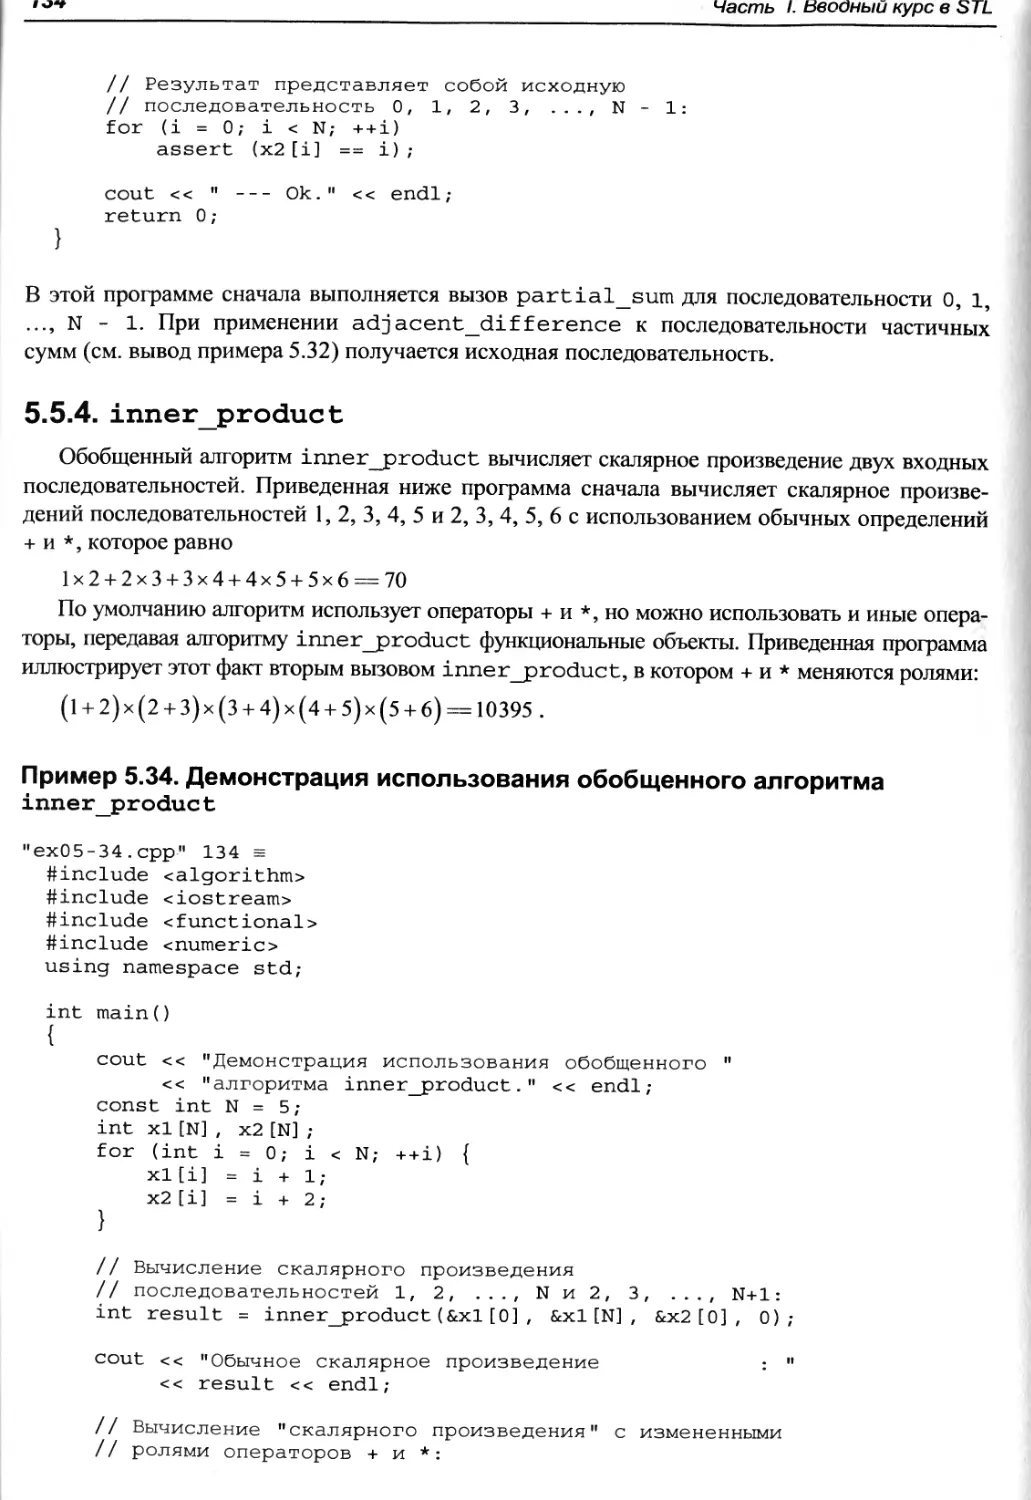 Пример 5.34. Демонстрация использования обобщенного алгоритма inner_product
5.5.4. inner_product